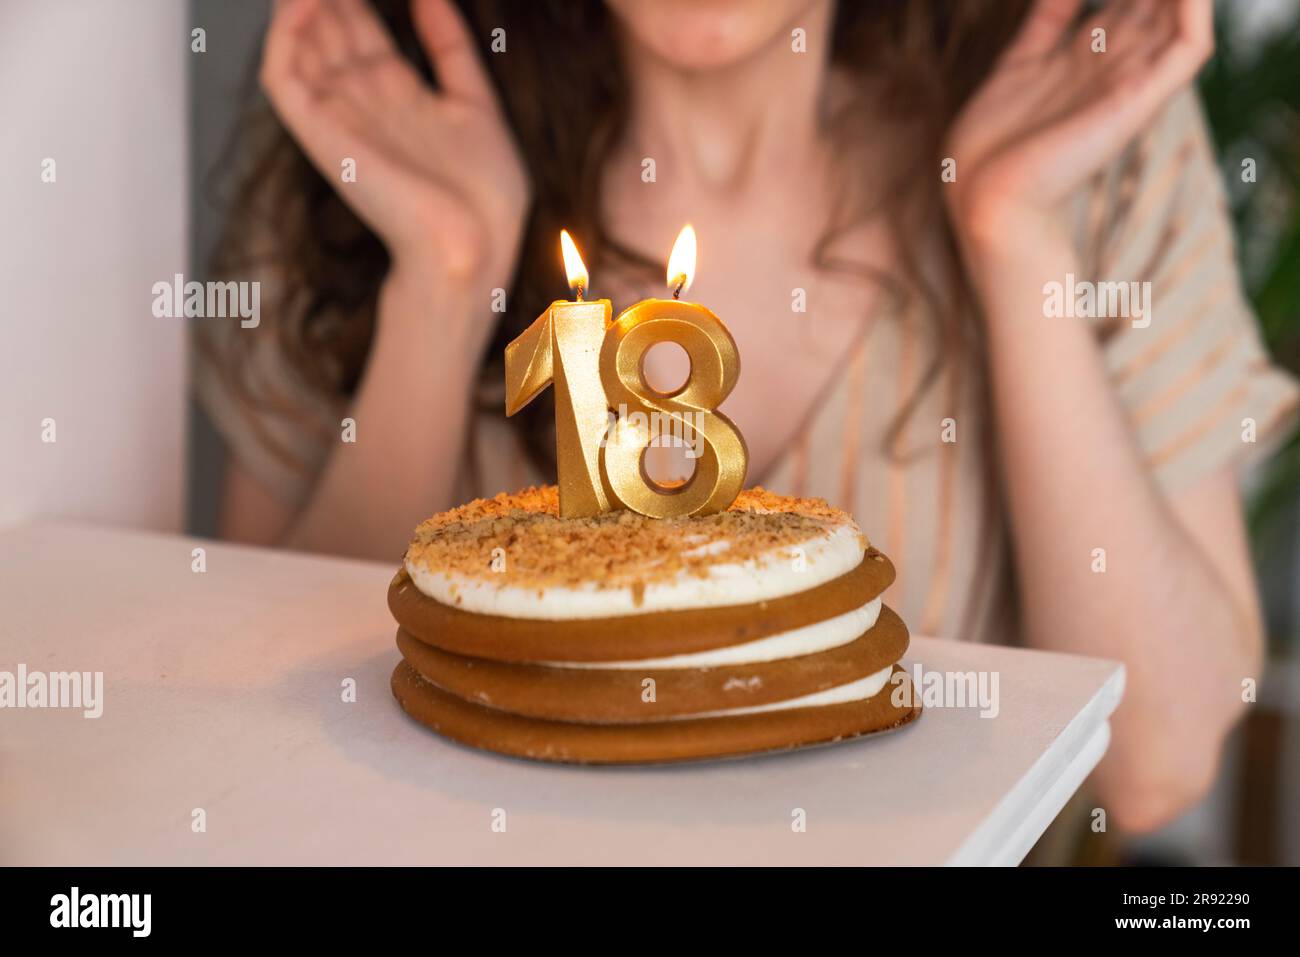 Feliz Chica De 18 Años En El Cono De Fiesta Hace Un Deseo Y Soplando Velas  En El Pastel De Cumpleaños Celebra El Cumpleaños En Cas Imagen de archivo -  Imagen de